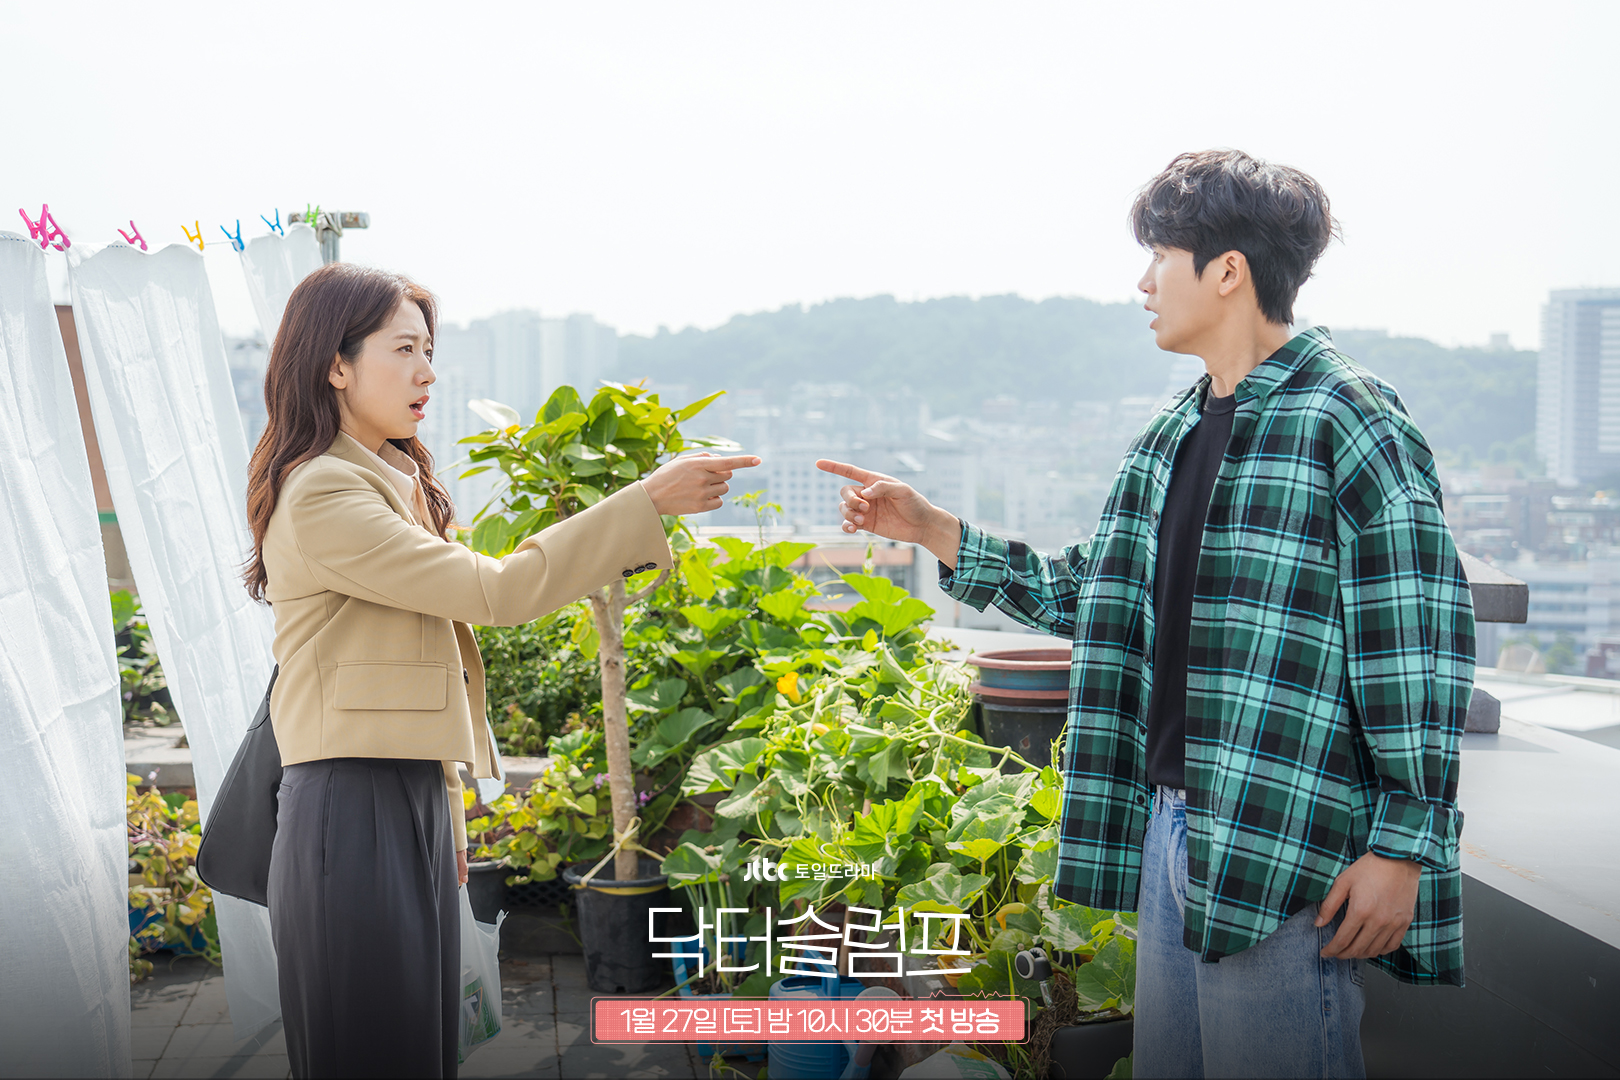 Yeo JeongWoo - Nam HaNeul gặp lại nhau trong khoảnh khắc tồi tệ nhất trong cuộc đời. Họ an ủi nhau và một mối quan hệ lãng mạn nảy nở giữa họ.